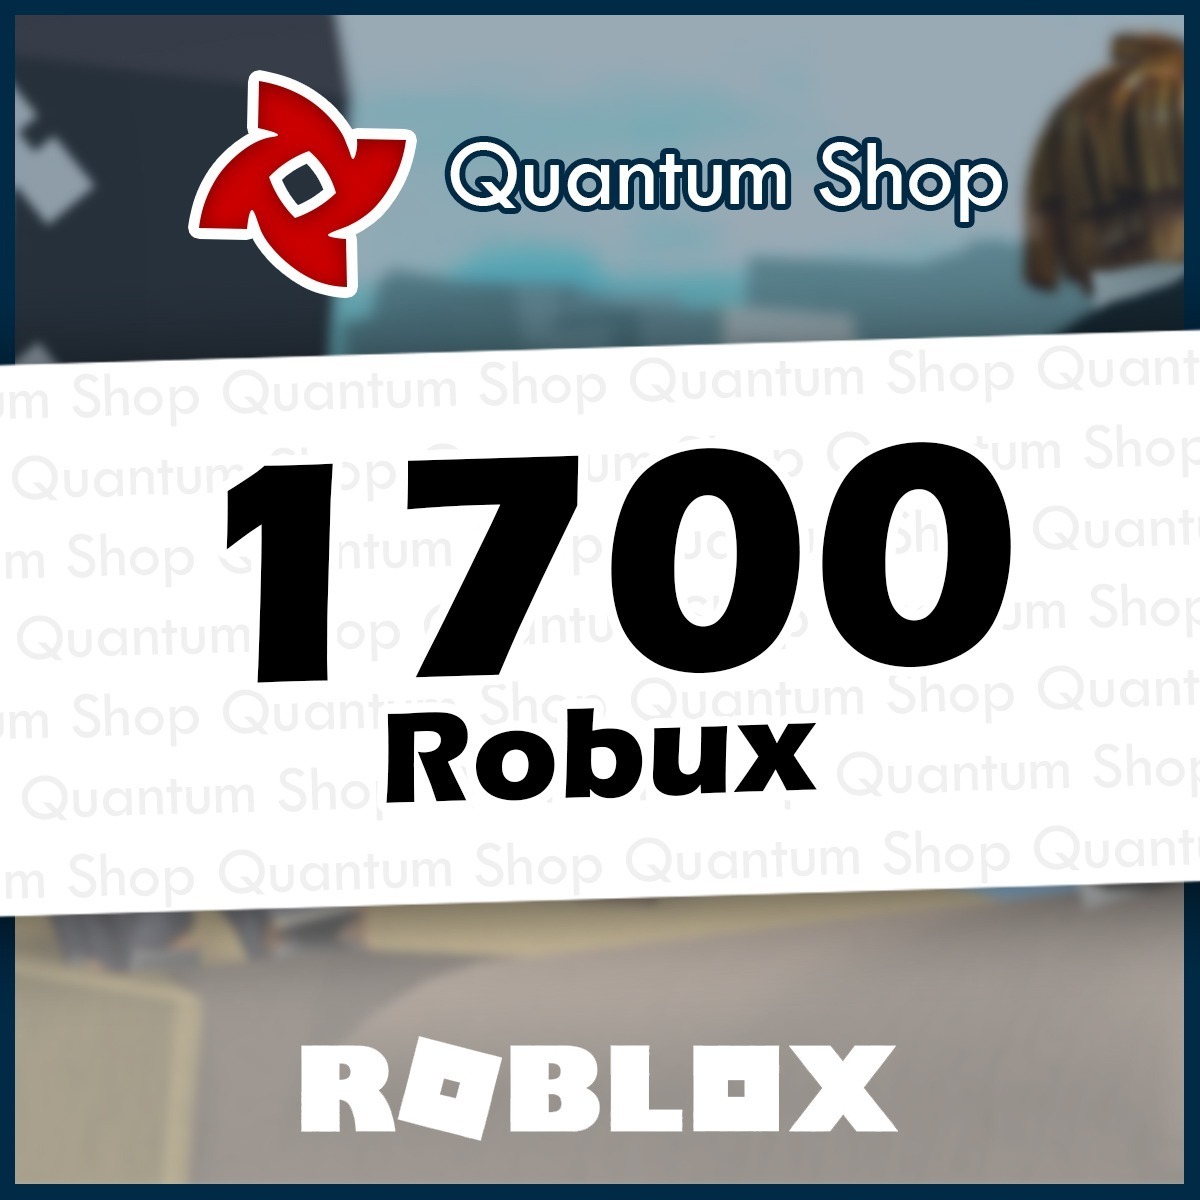 1700 Robux Roblox Mejor Precio Todas Las Plataformas S 57 00 - roblox premium 1000 robux entrega las 24hrs 399 00 en mercado